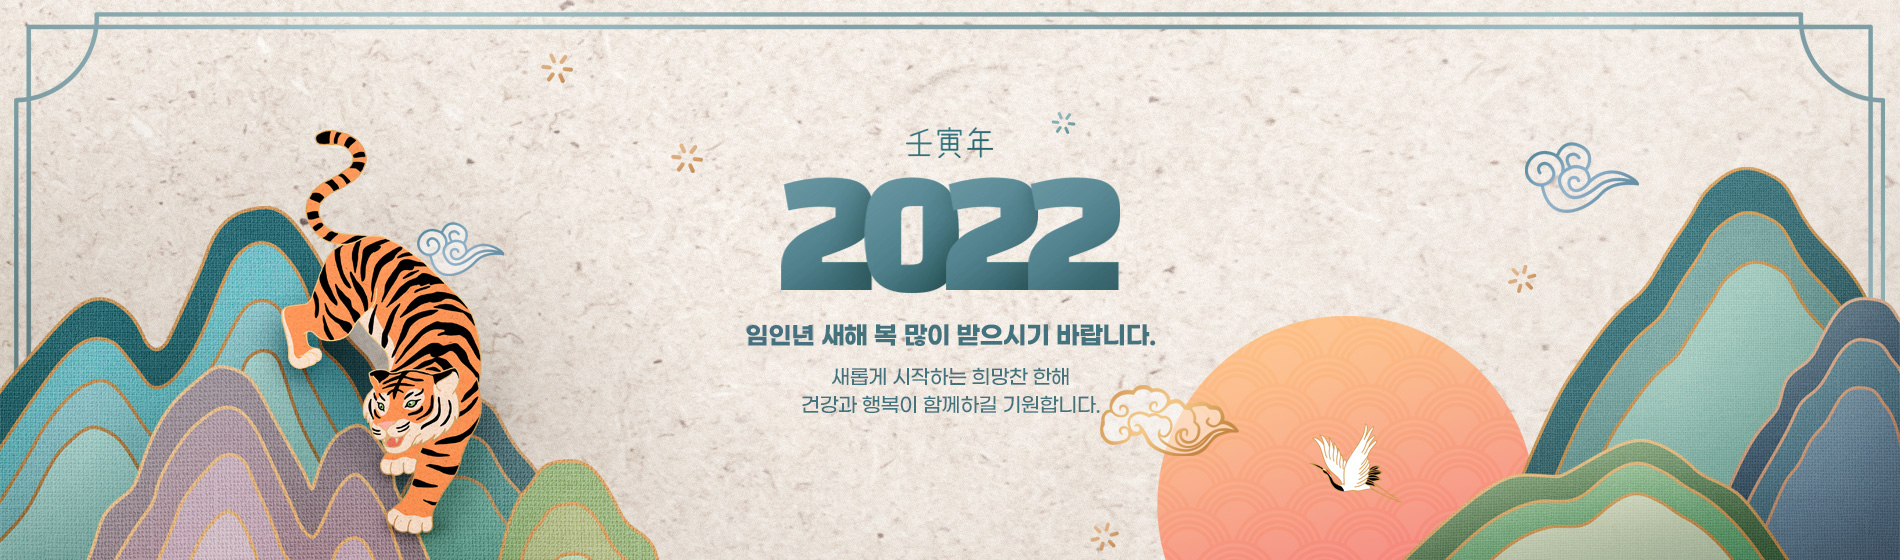 2022 새해인사